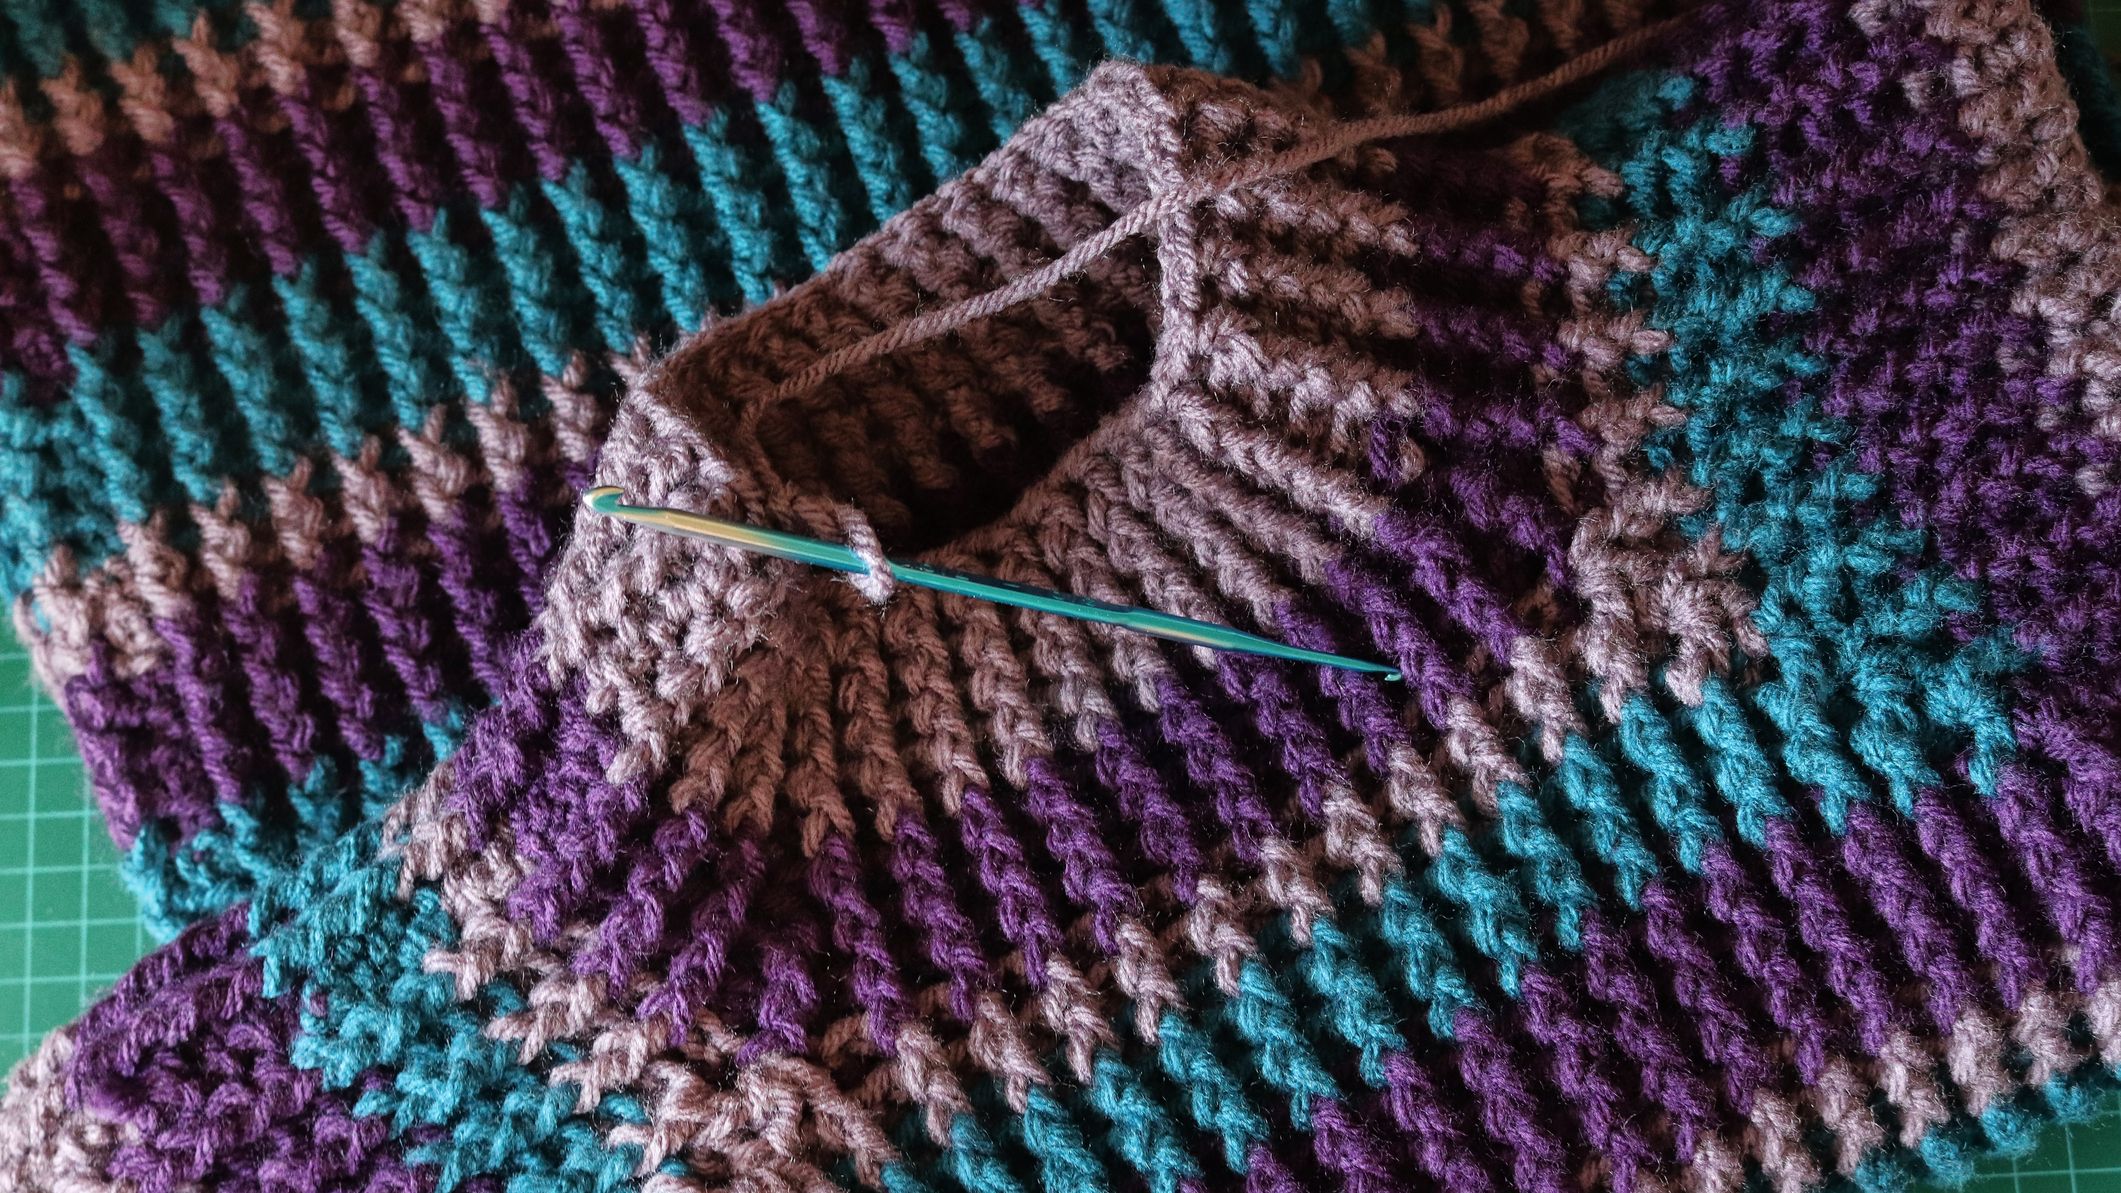 Crochet project ideas: Gorgeous crochet vest inspiration